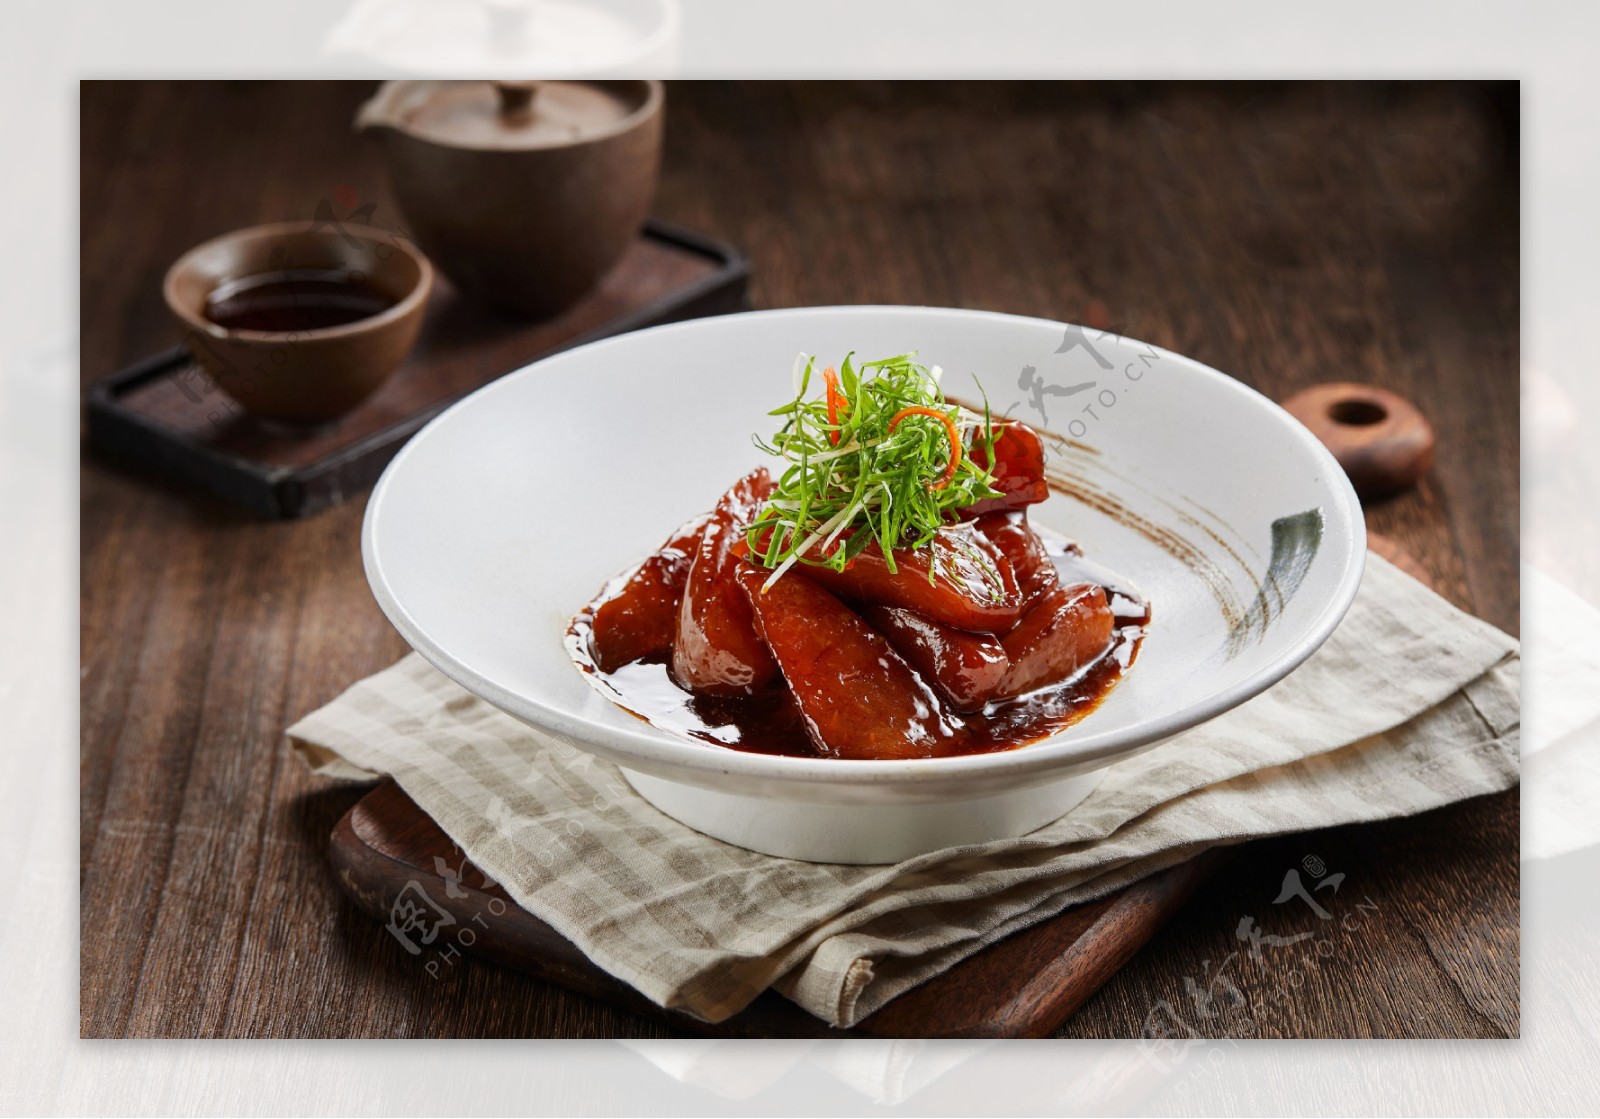 中国传统菜品红烧肉